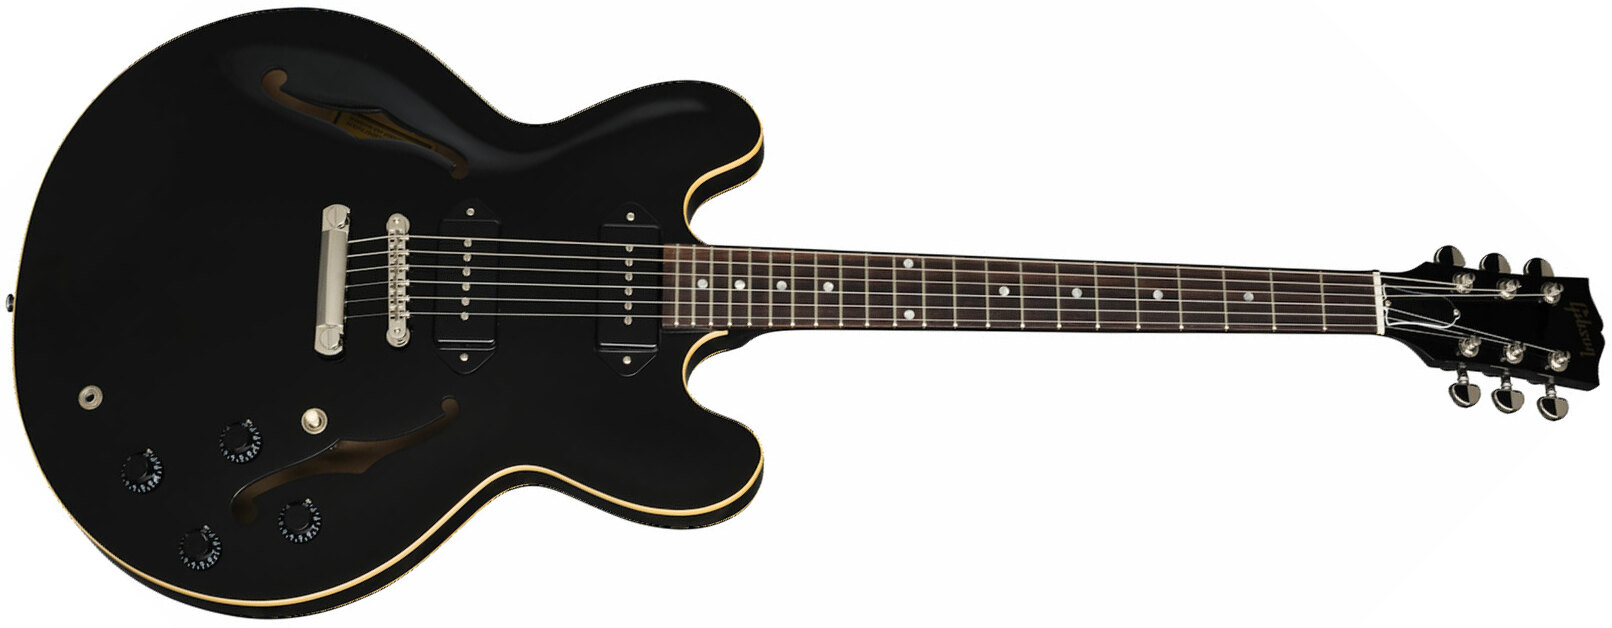 Gibson Es-335 Dot P-90 2019 Ht Rw - Ebony - Semi hollow elektriche gitaar - Main picture